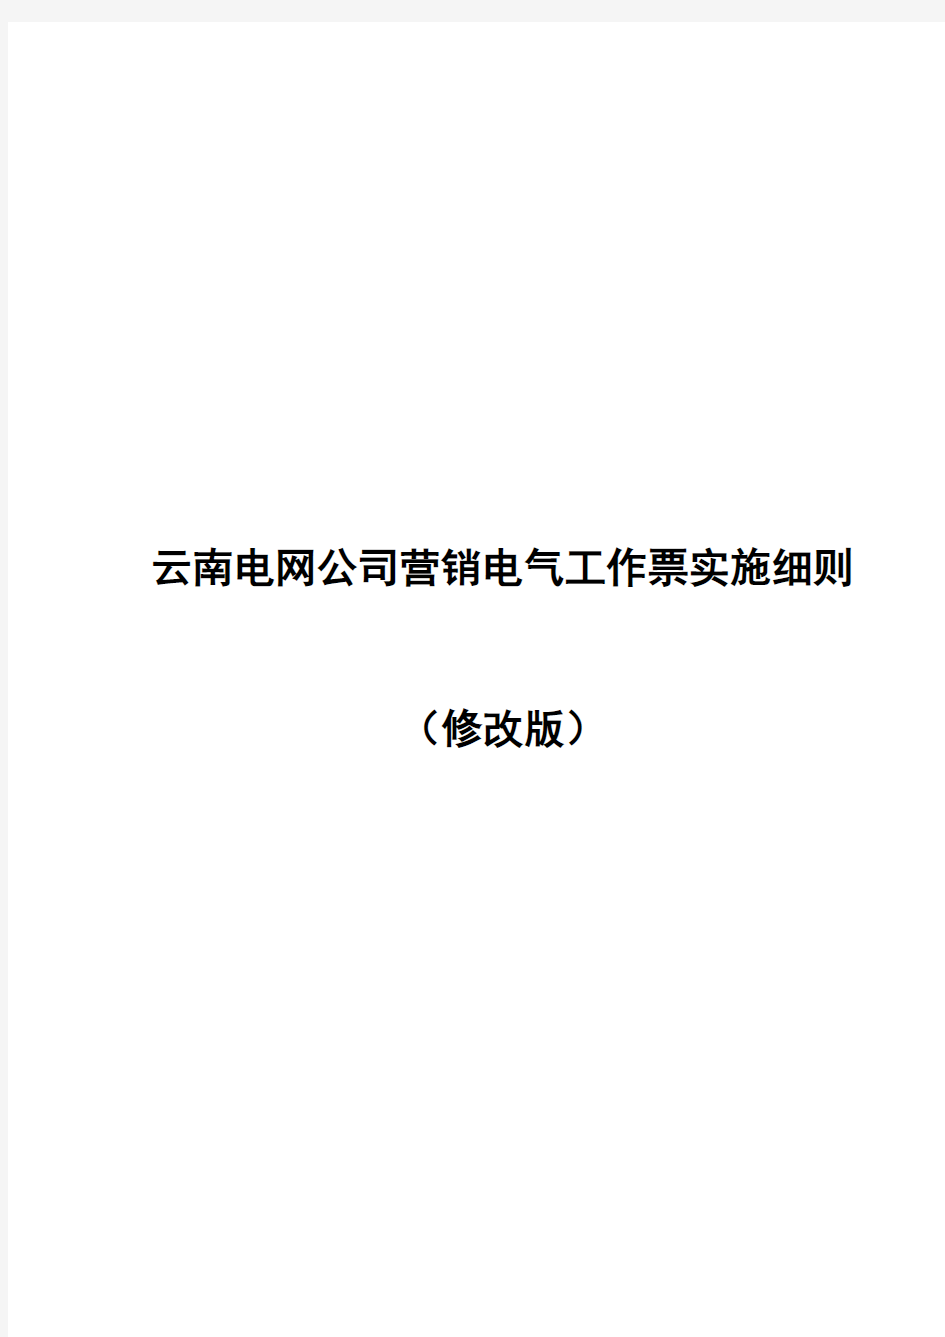 5.云南电网公司营销电气工作票实施细则(修改版)(20160125)